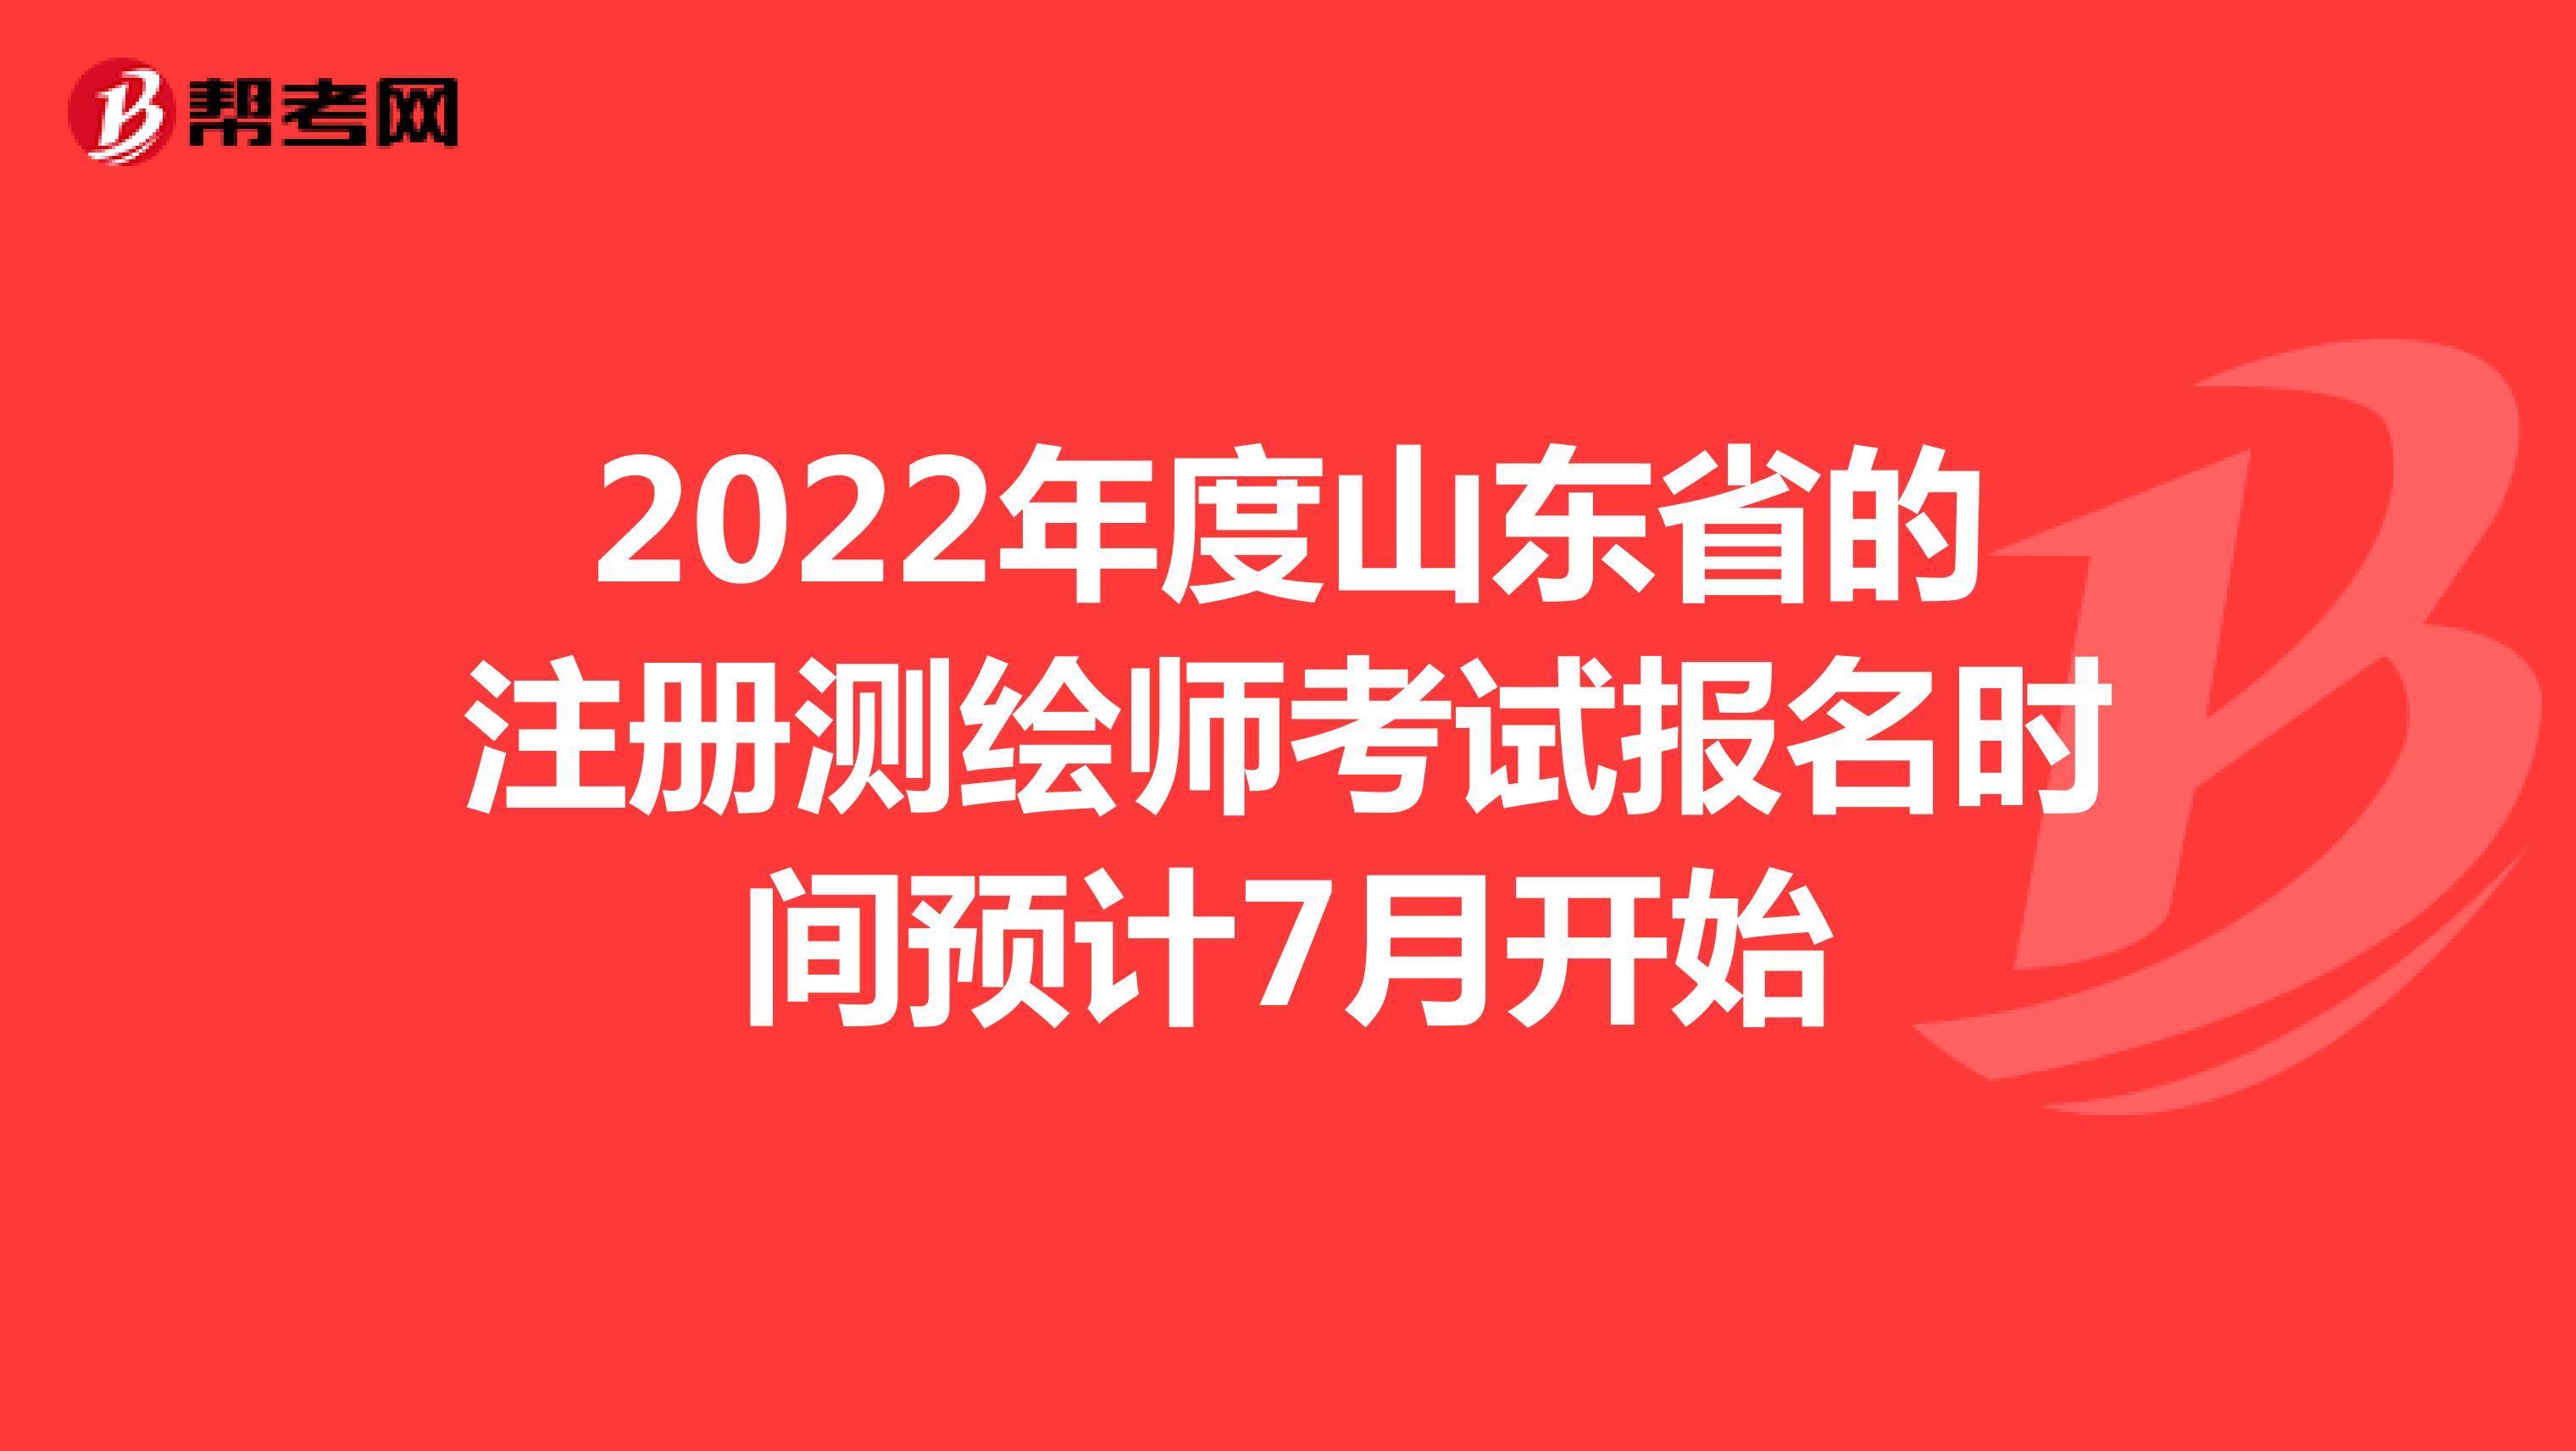 2022年度山东省的注册测绘师考试报名时间预计7月开始